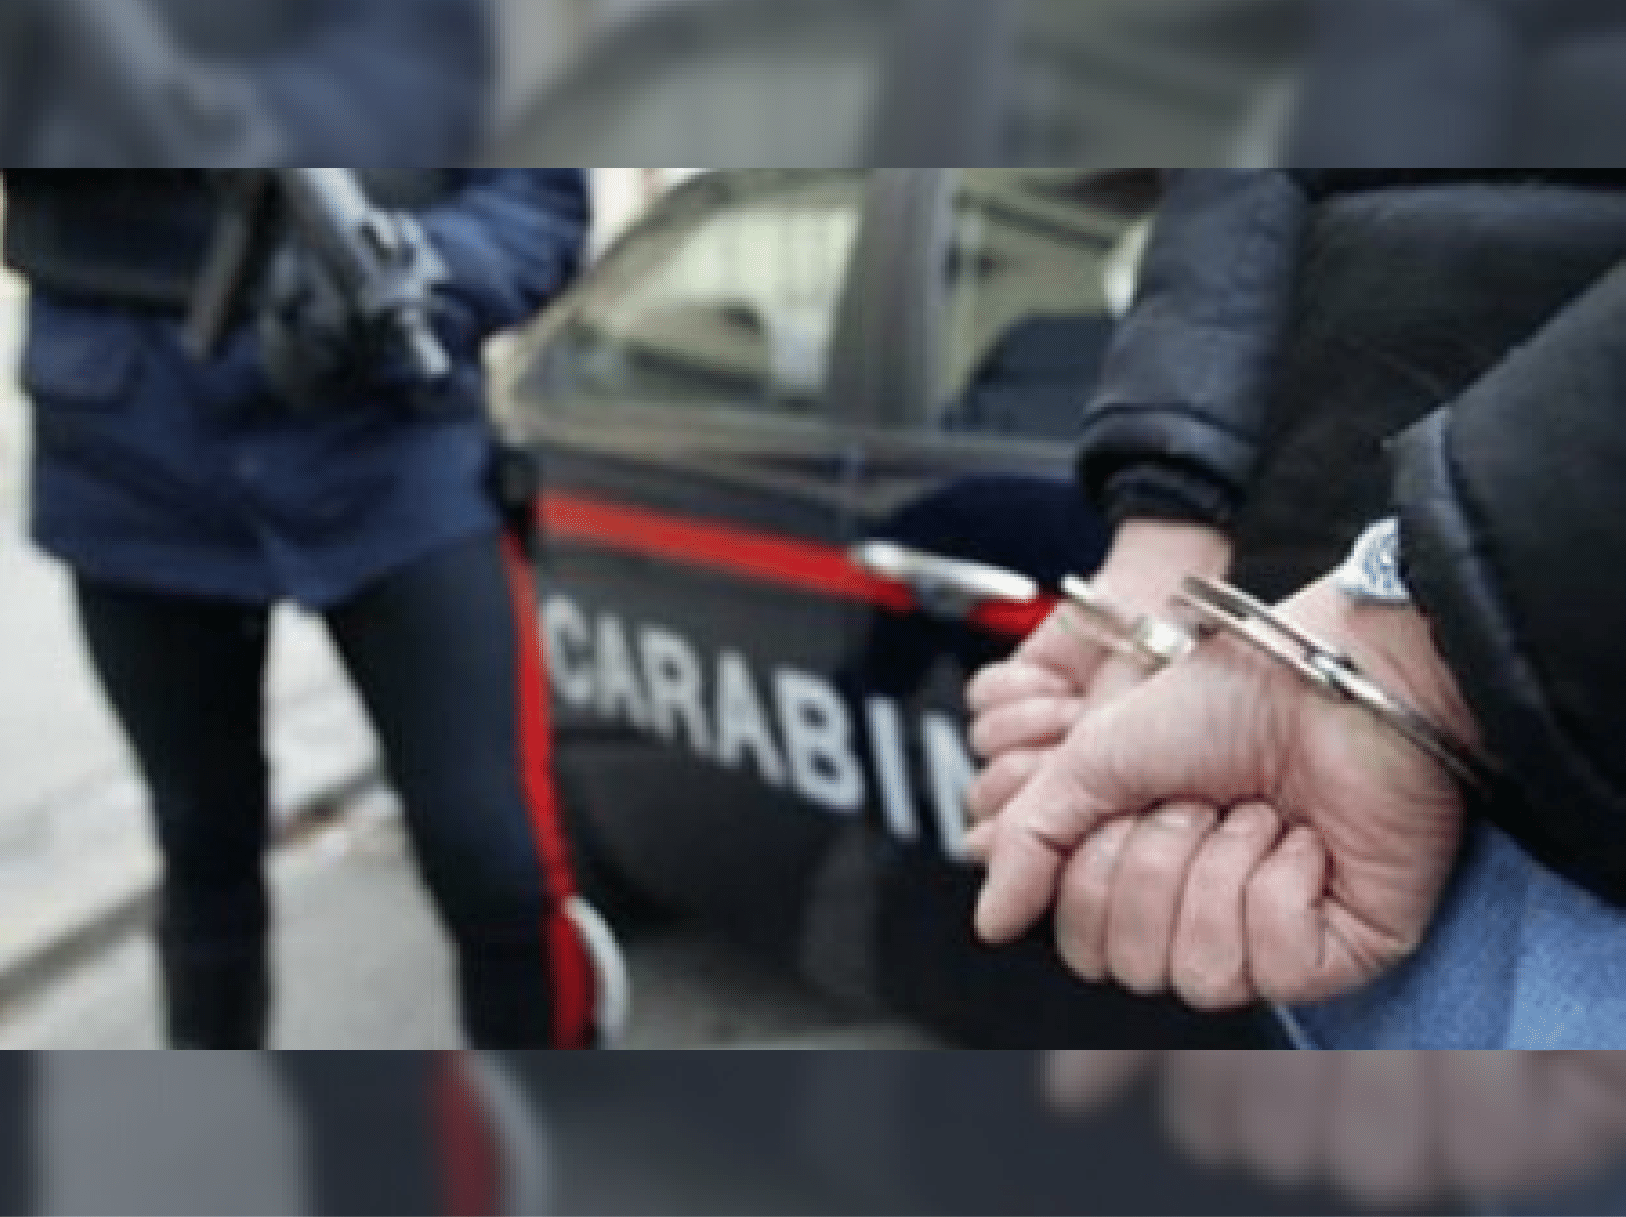 Immagine articolo: Gibellinese 42enne arrestato dai Carabinieri di Castelvetrano. Lo scorso Marzo tento' furto a S. Ninfa